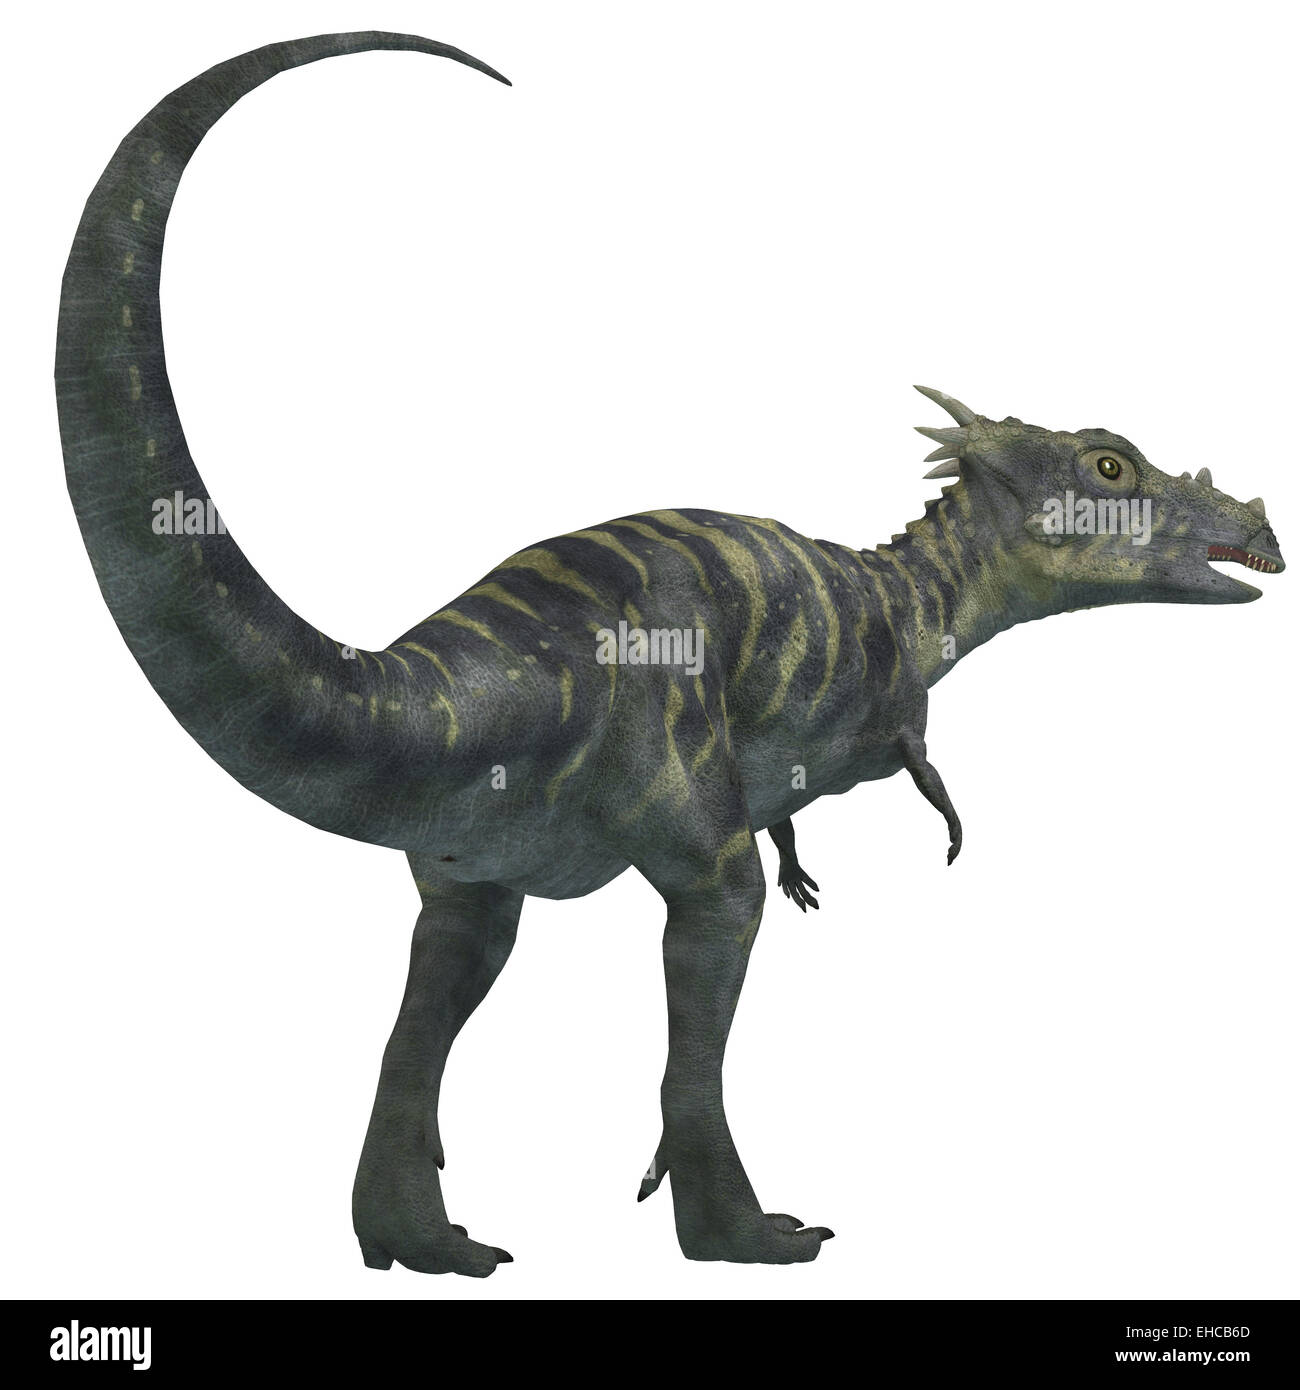 Dracorex war ein pflanzenfressender Dinosaurier, der lebte in der Kreidezeit Zeitraum of North America. Stockfoto